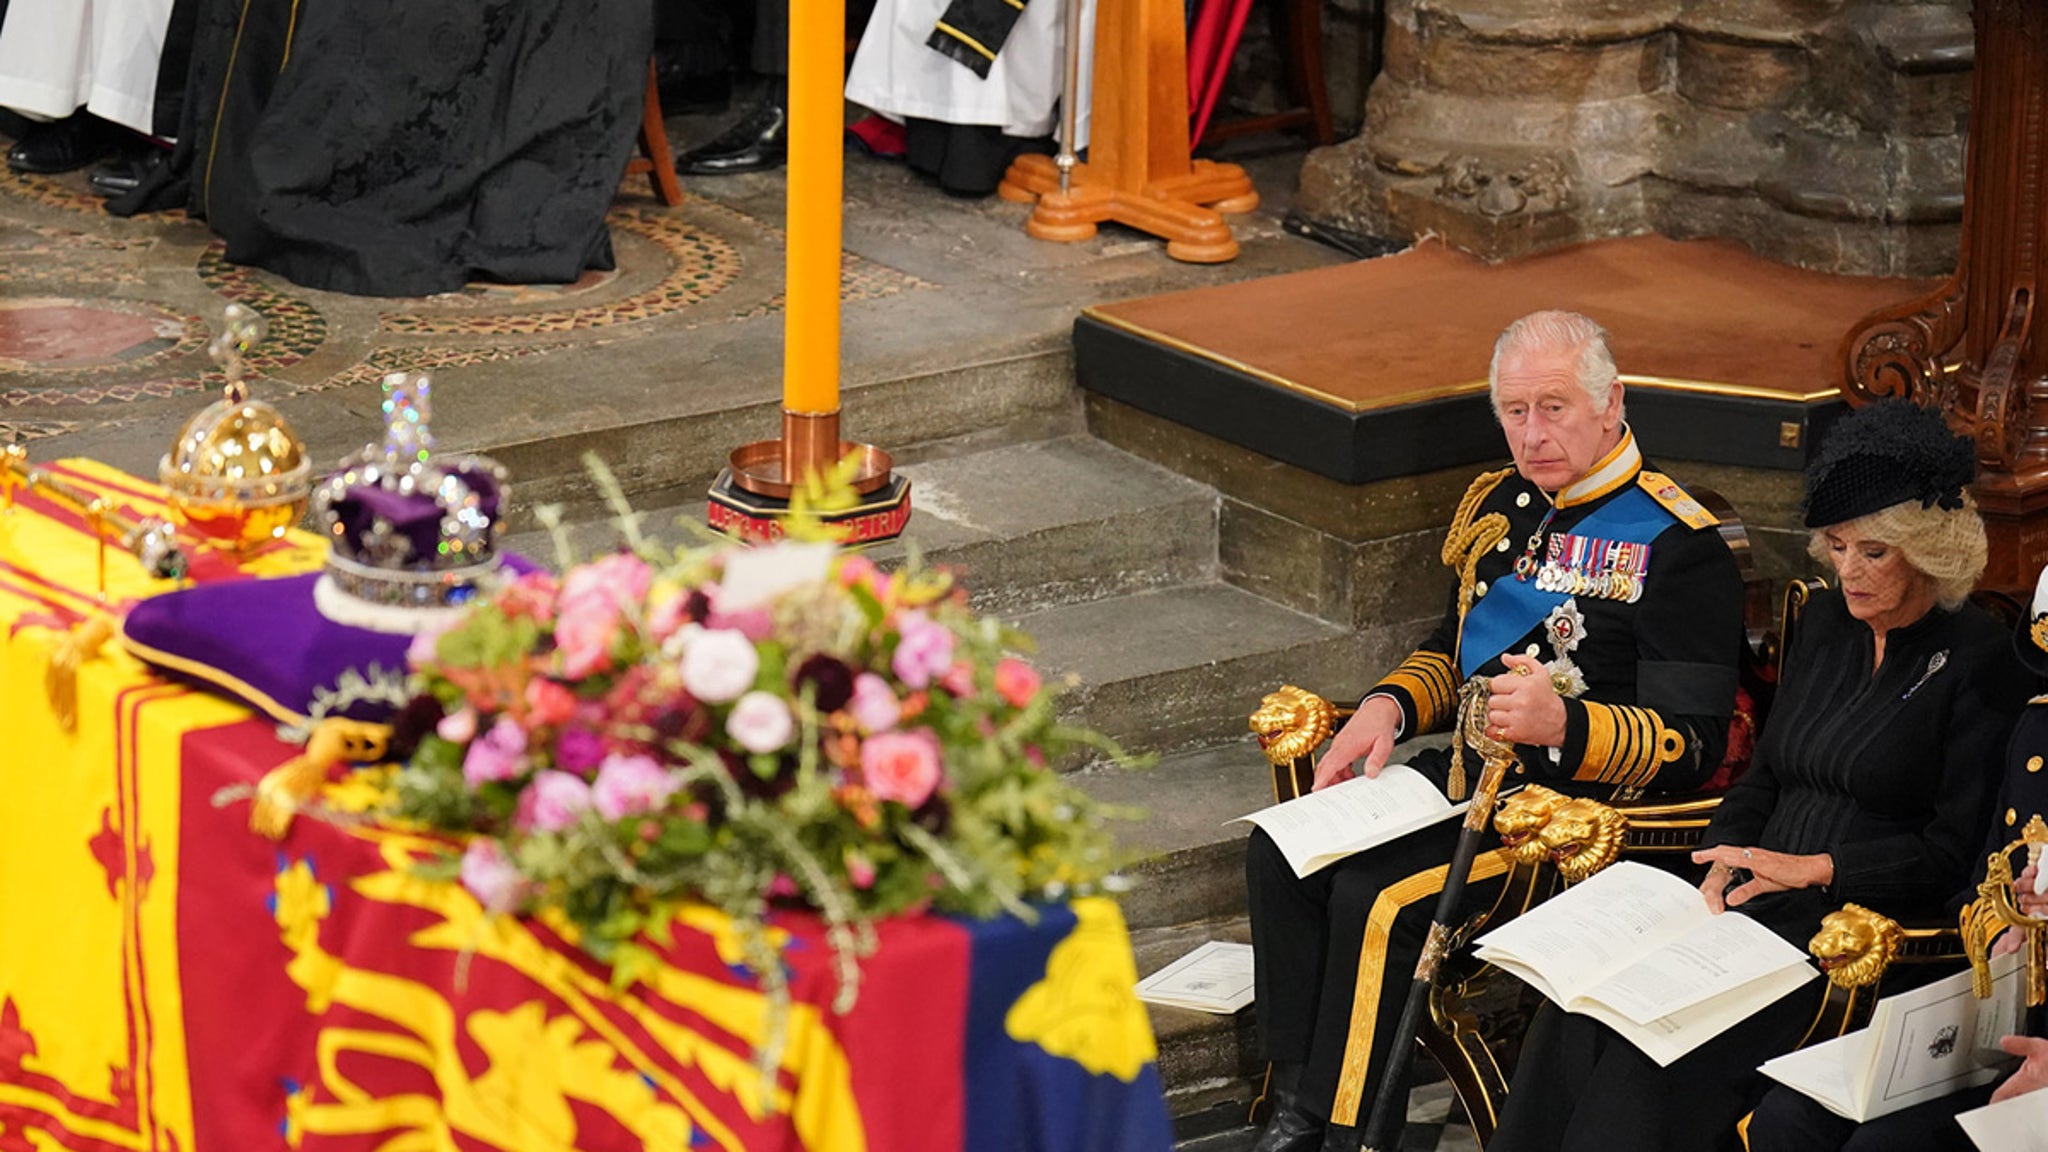 Queen Elizabeth's funeral is underway in England